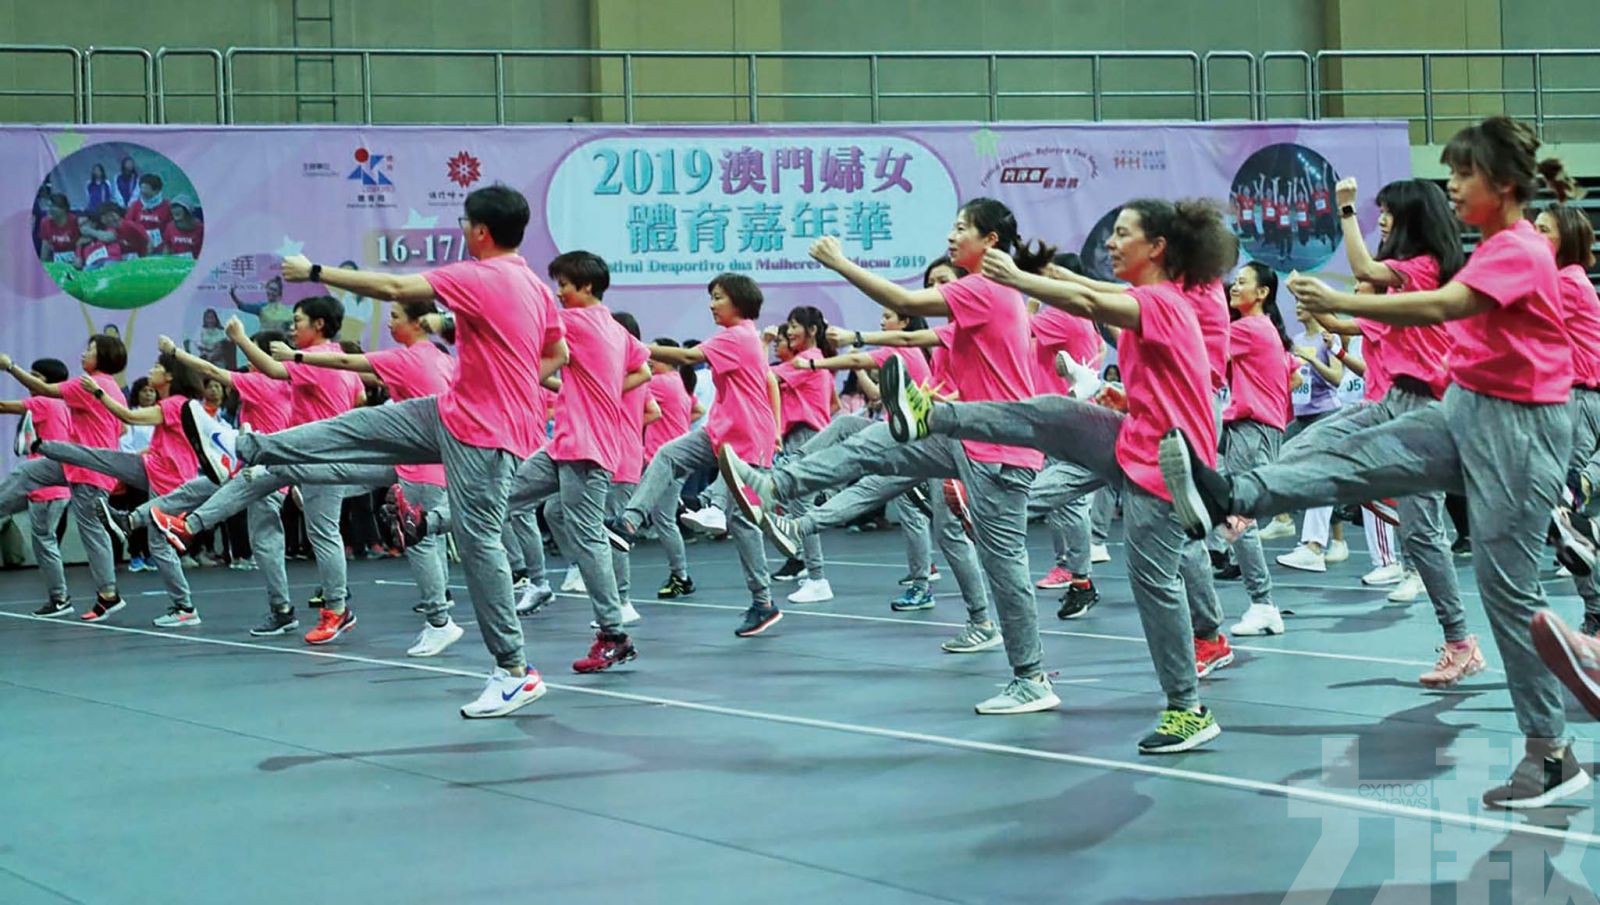 婦女體育嘉年華下月21日塔石舉行